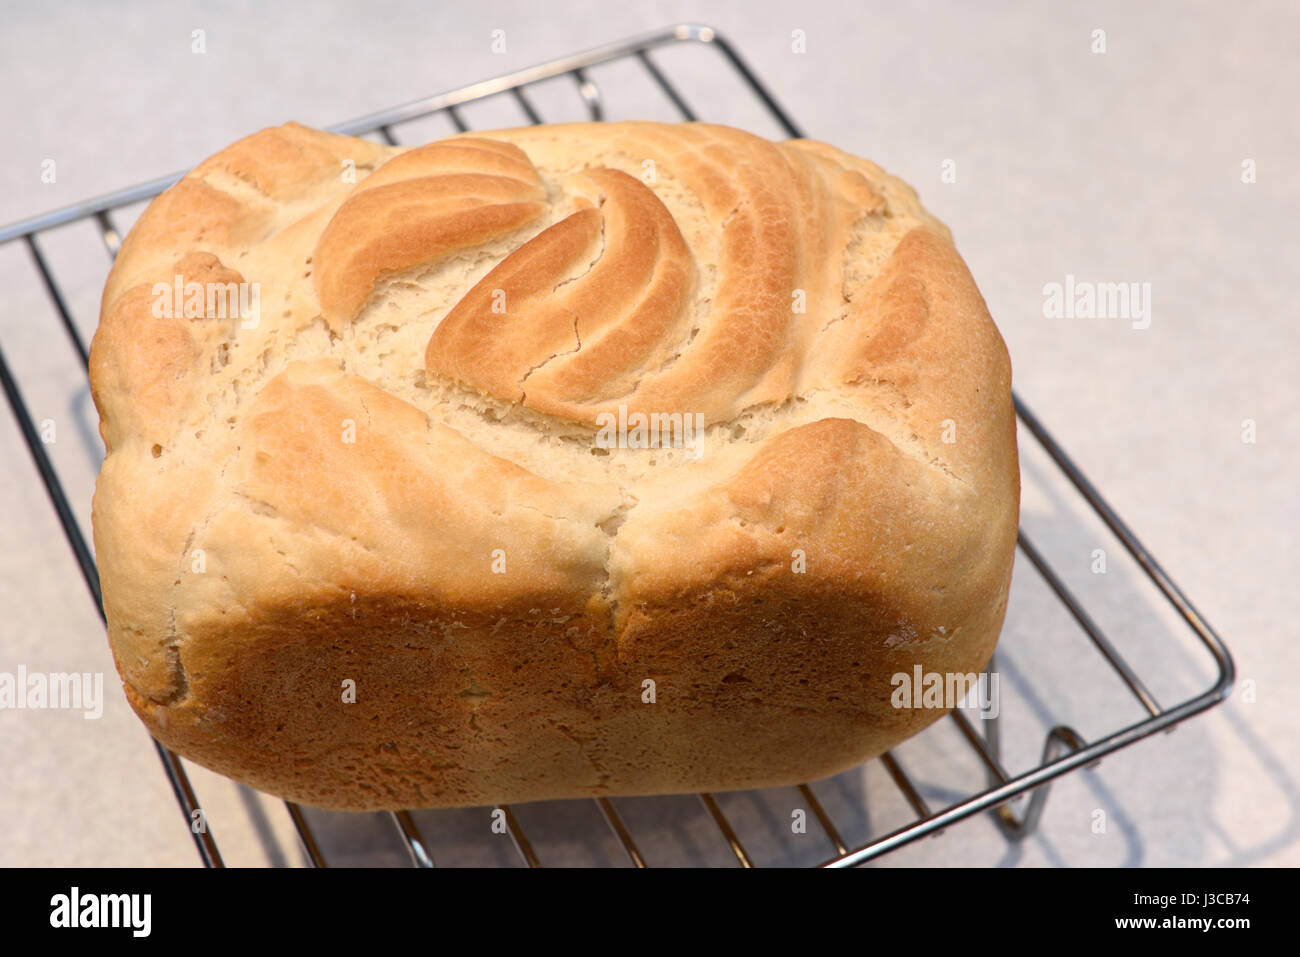 Frisch gebackene Brot von home made glutenfreies Brot auf ein Kuchengitter auf einer Küchenarbeitsplatte Stockfoto